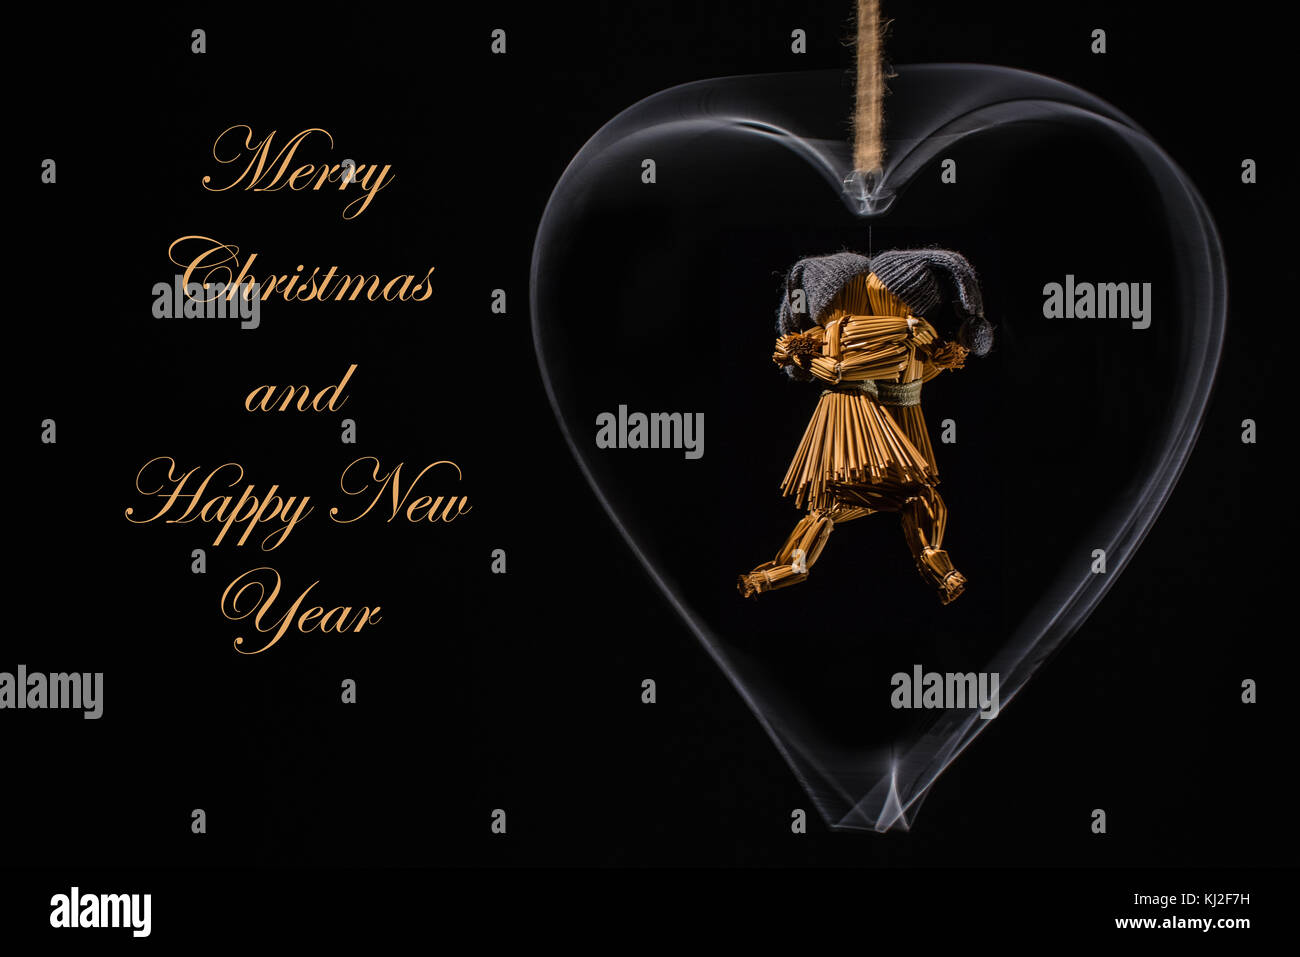 Weihnachtsgrüße mit Tanz Stroh Puppen in einem rotierenden Metal Heart und mit dem Text: Frohe Weihnachten und ein glückliches neues Jahr im Stroh/Gold Farbe Stockfoto